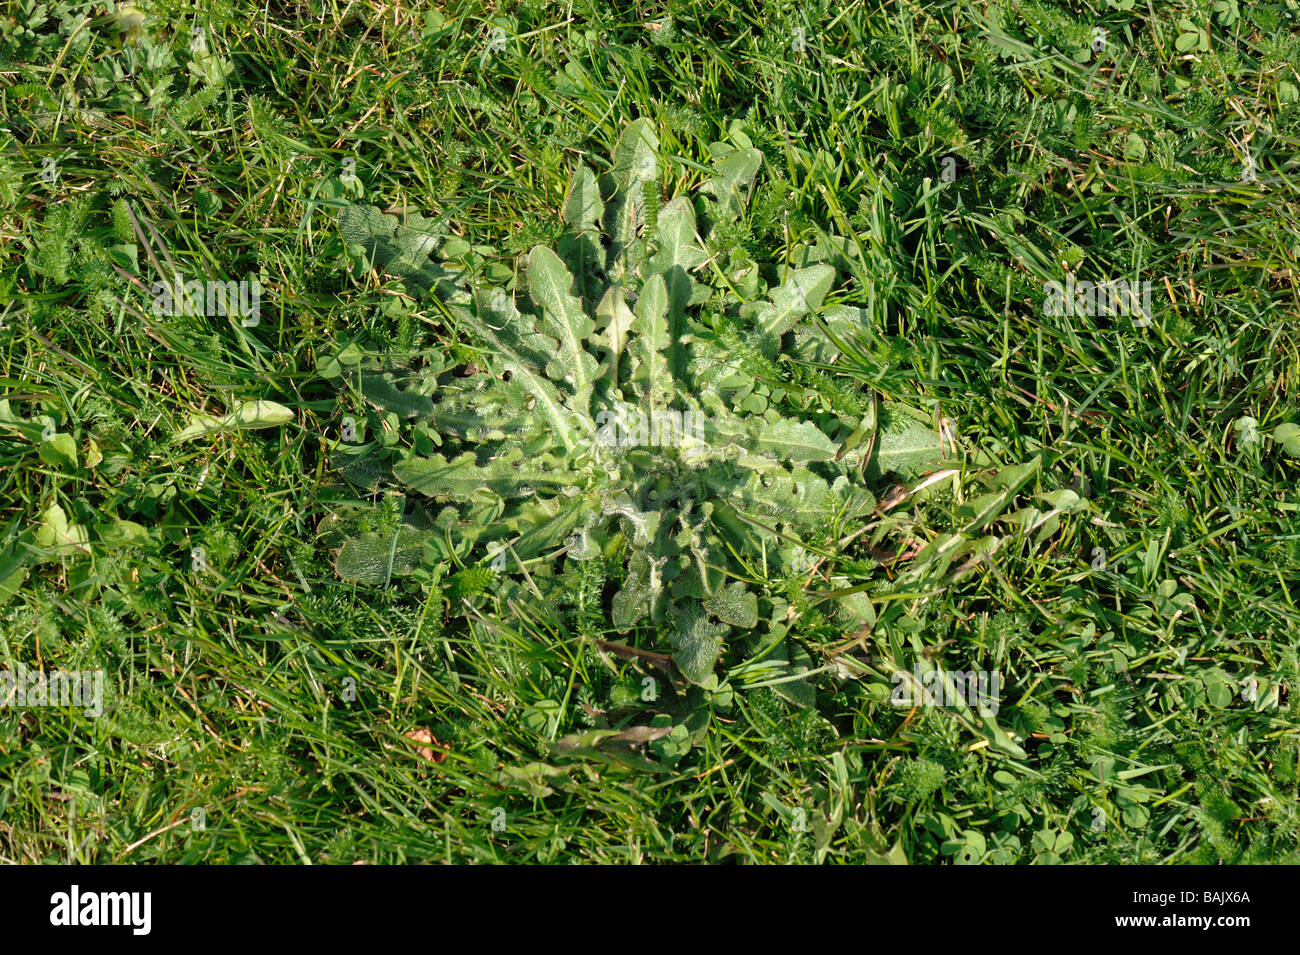 Moindre hawkbit Leontodon hispidus rosette de feuilles dans un jardin pelouse Banque D'Images